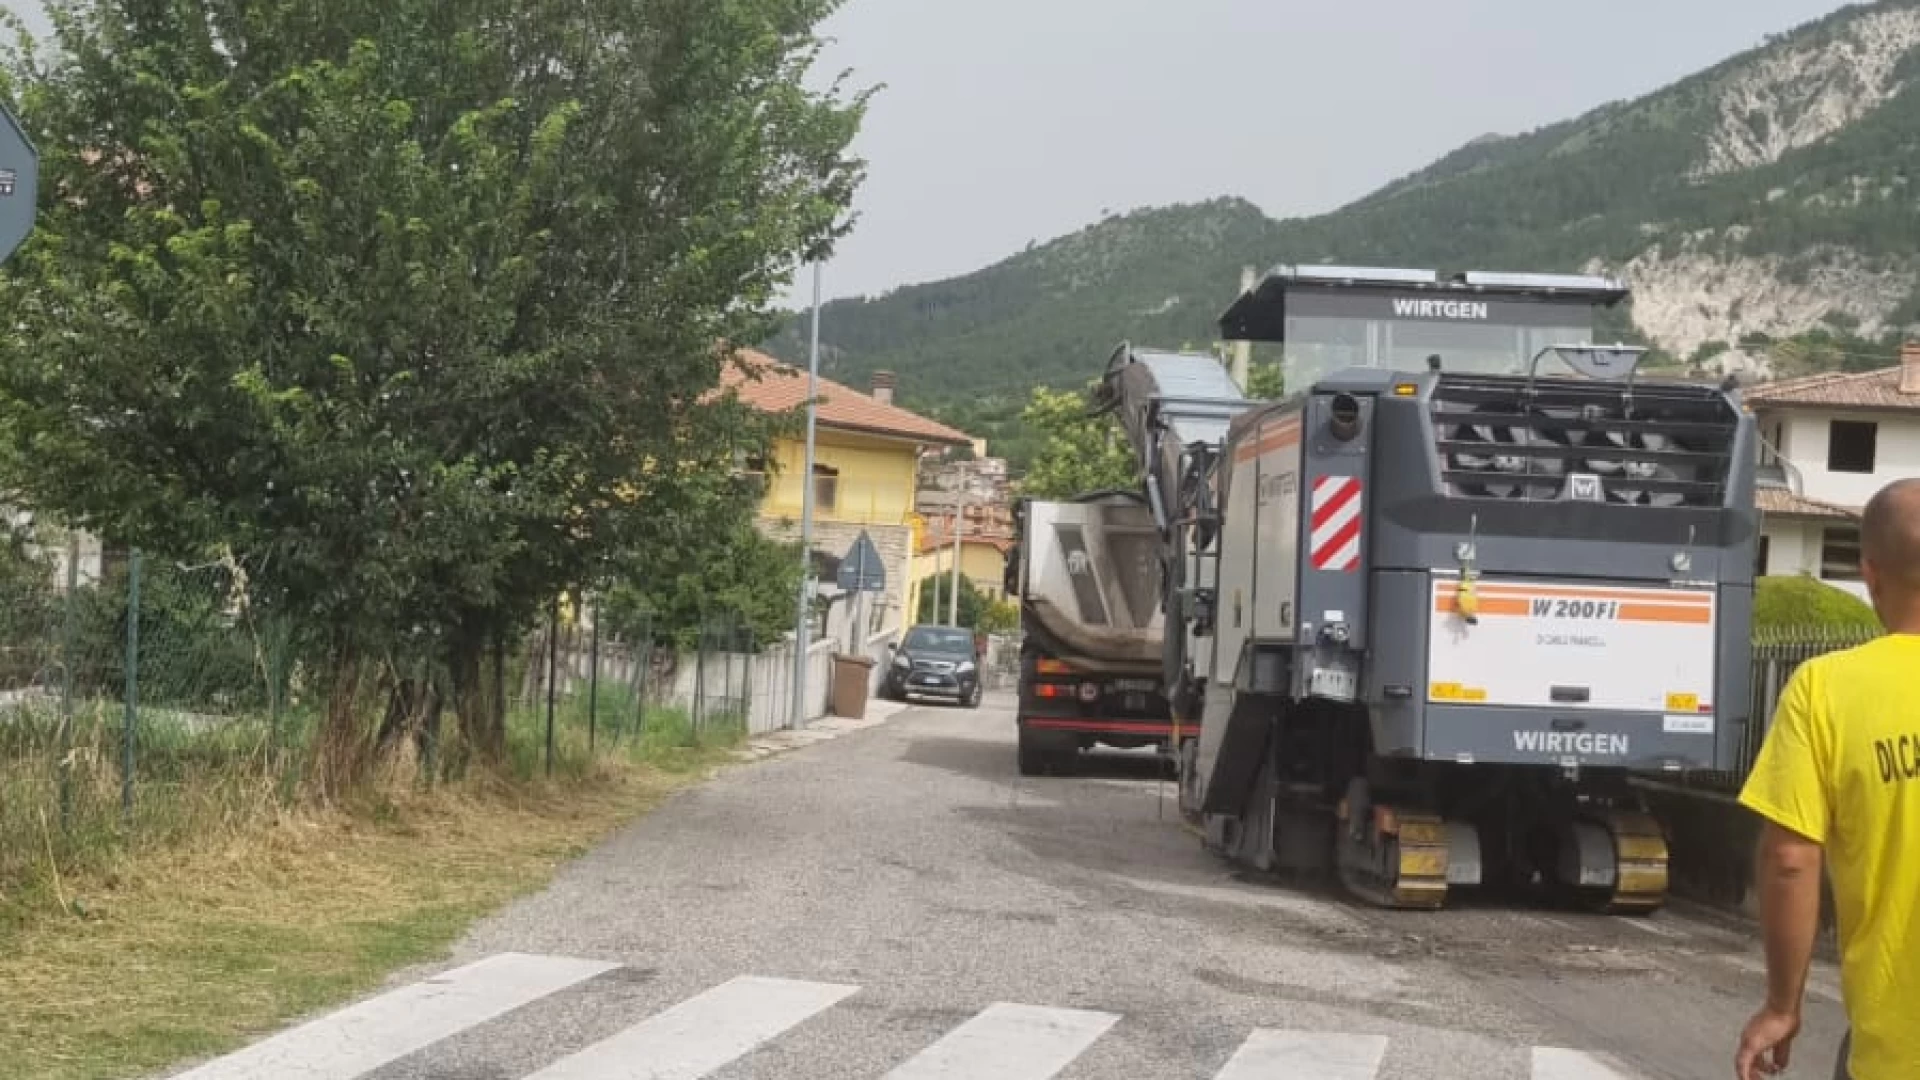 Provincia dell’Aquila, avviati i lavori sulle strade SP 5, SP 32 ed SP 29, nei comuni di Lucoli e Pizzoli